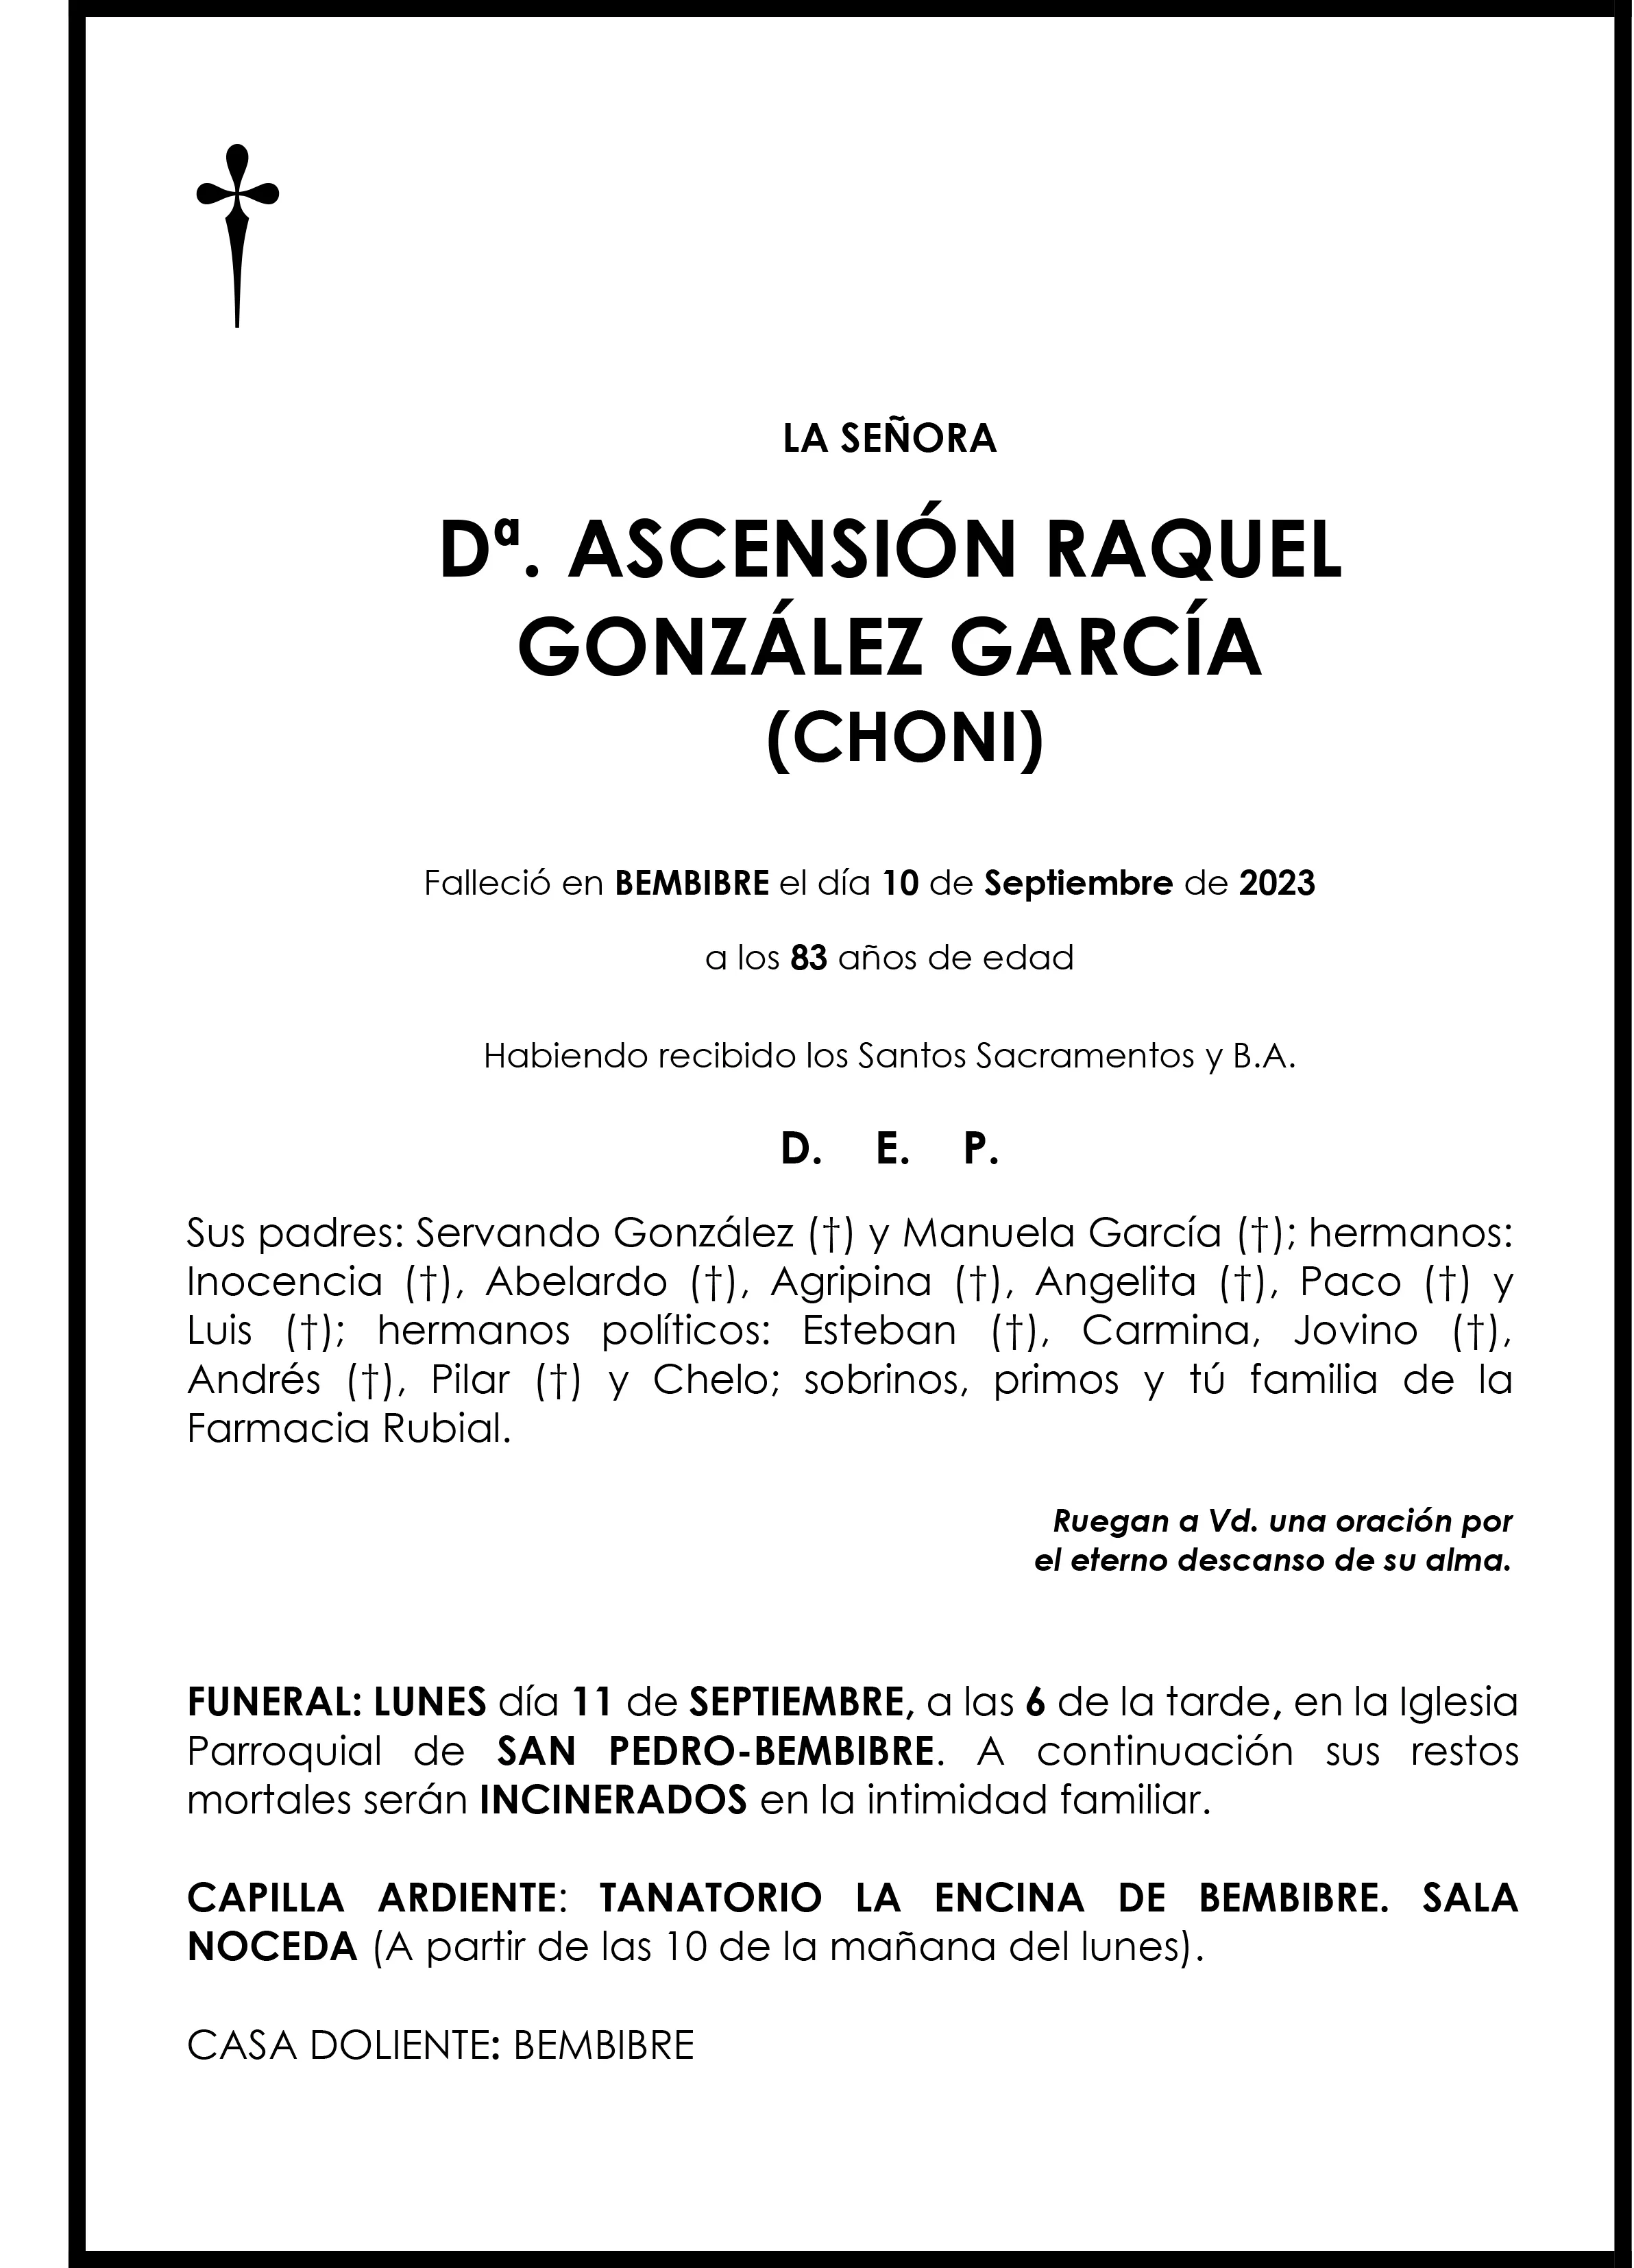 ASCENSION RAQUEL GONZALEZ GARCIA